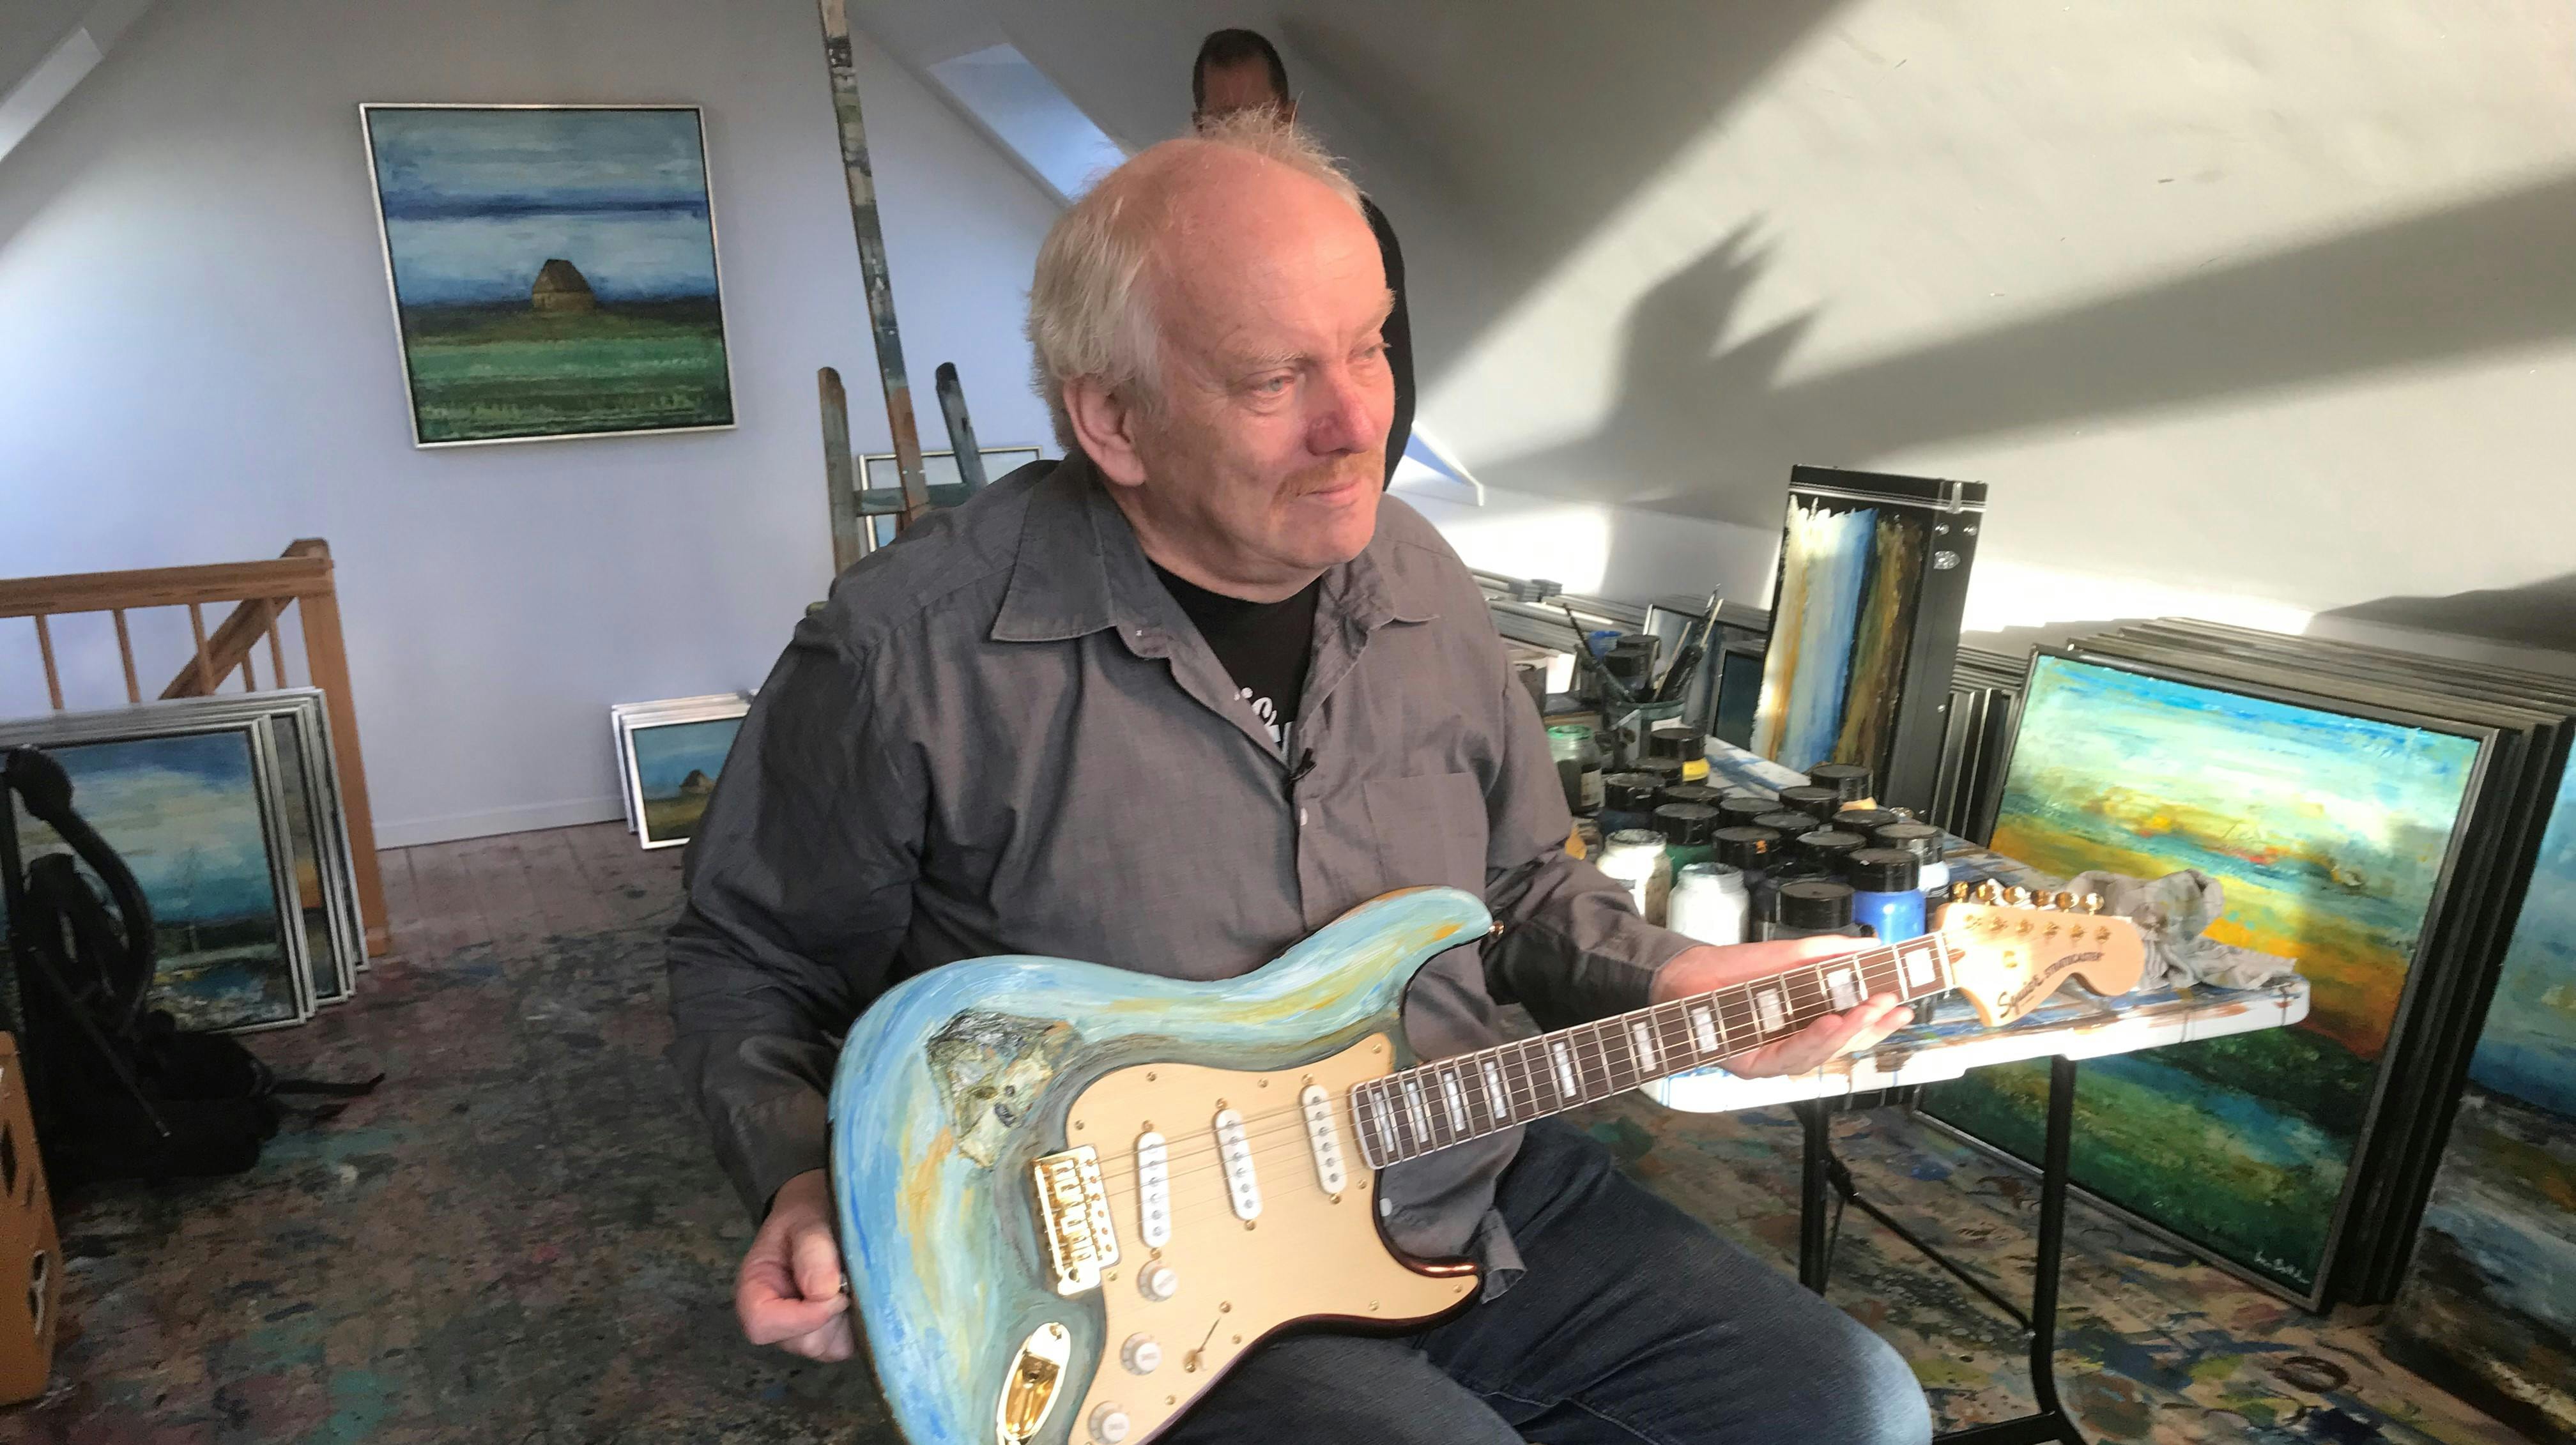 Flemming Pedersen har allerede fået en række danske musikere til at skrive deres navn på hans guitar, nu håber han, at Bruce Springsteen også vil sætte sin signatur på instrumentet.